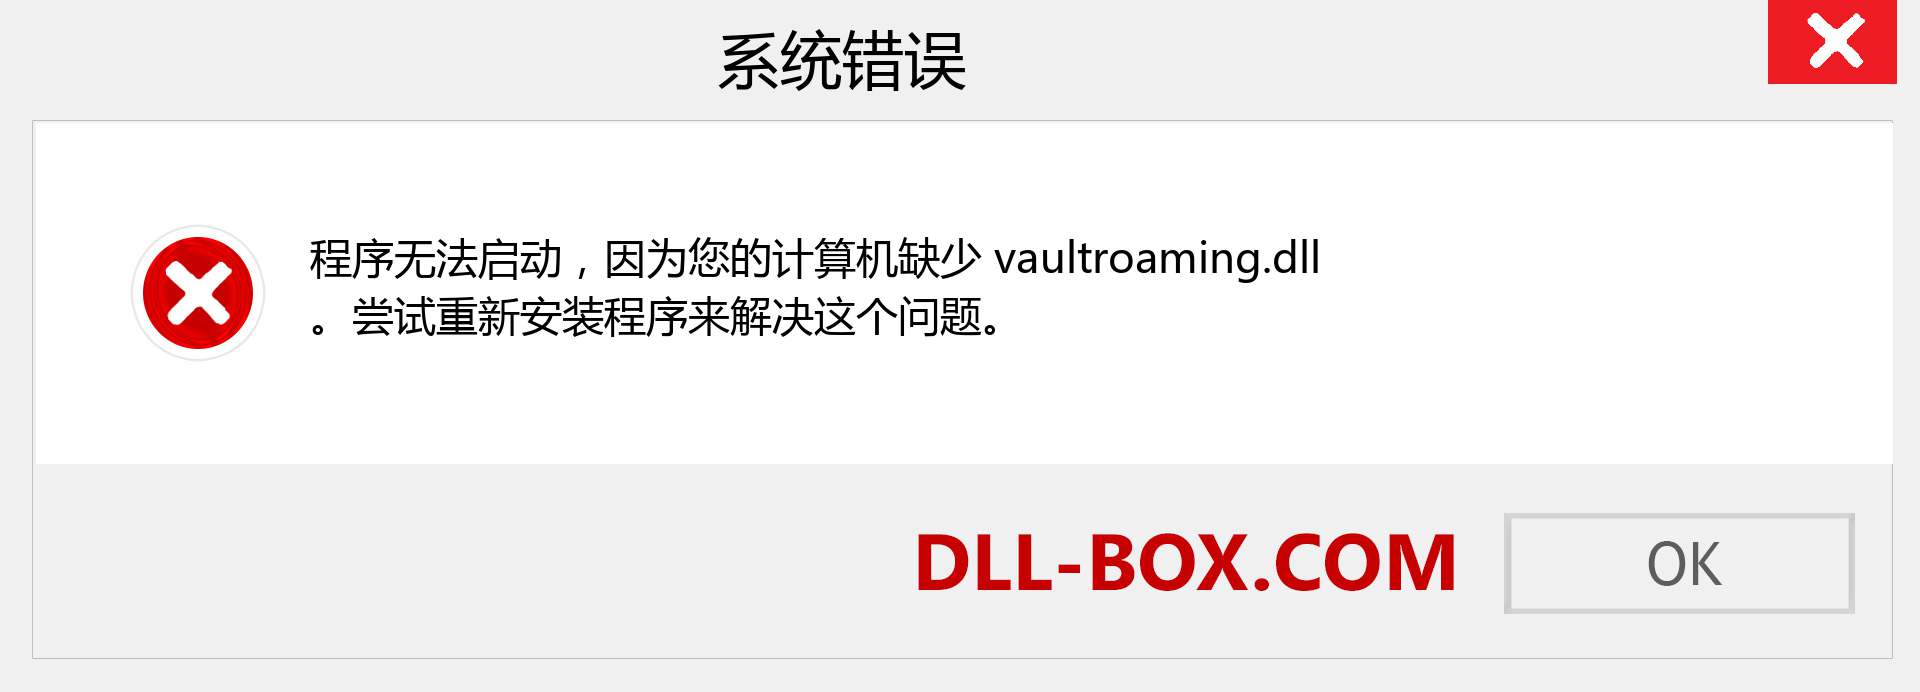 vaultroaming.dll 文件丢失？。 适用于 Windows 7、8、10 的下载 - 修复 Windows、照片、图像上的 vaultroaming dll 丢失错误